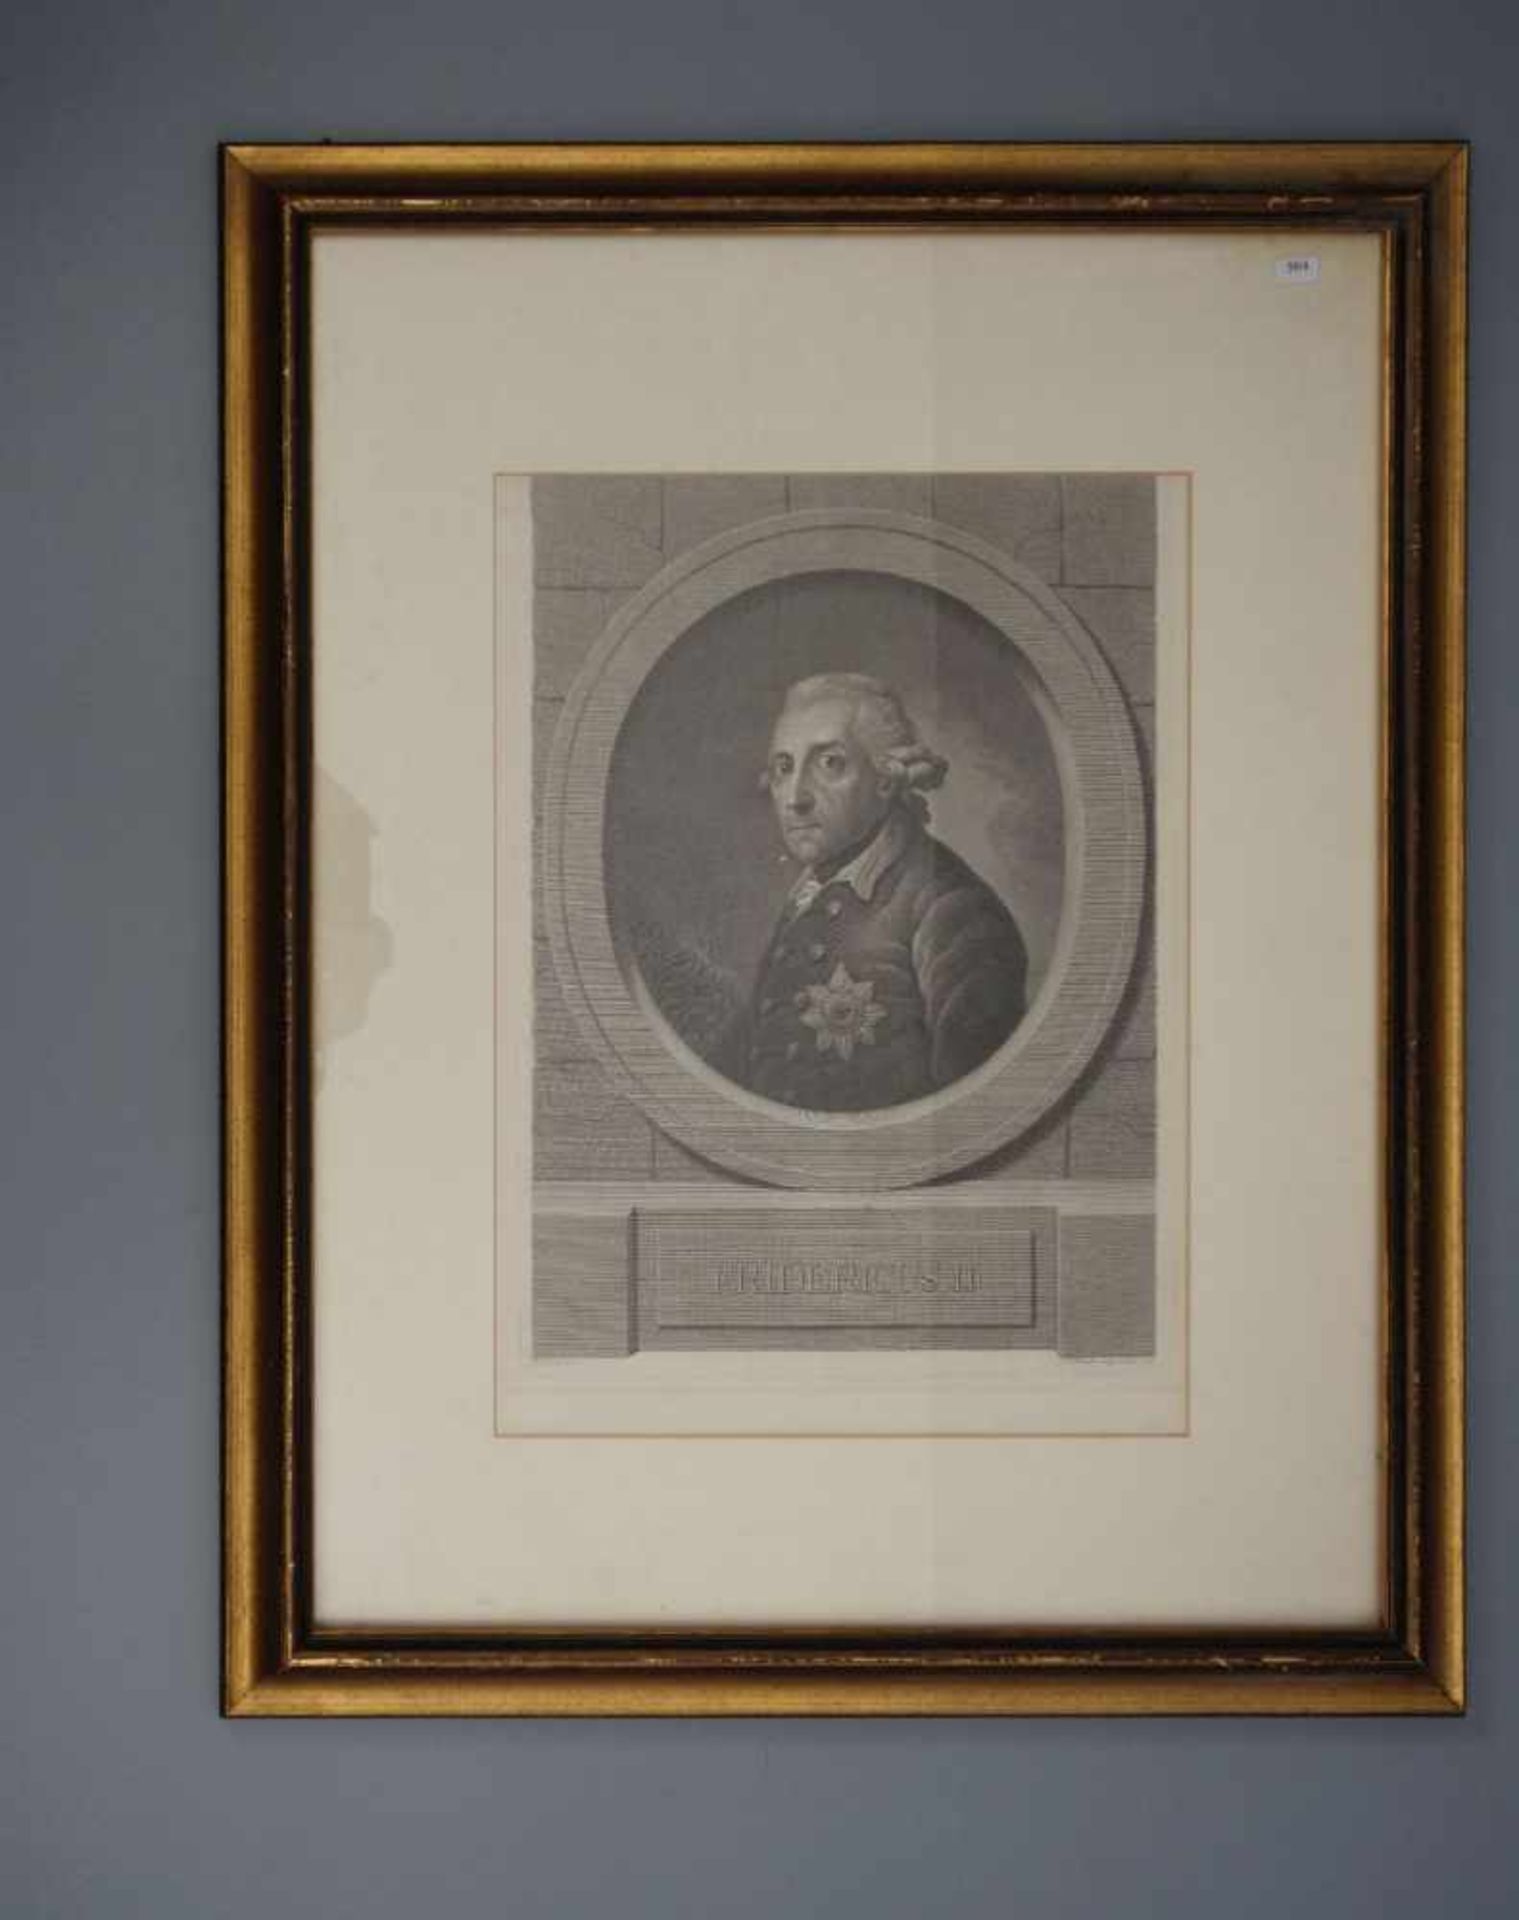 BAUSE, JOHANN FRIEDRICH (1738-1814), Radierung / etching: "FRIDERICUS II" / "Friedrich der Große",